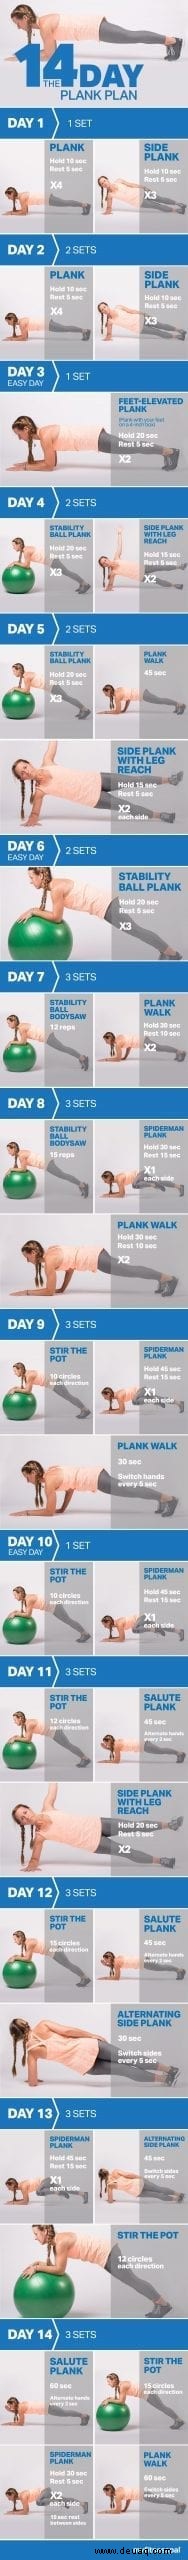 Der 14-Tage-Plank-Plan 